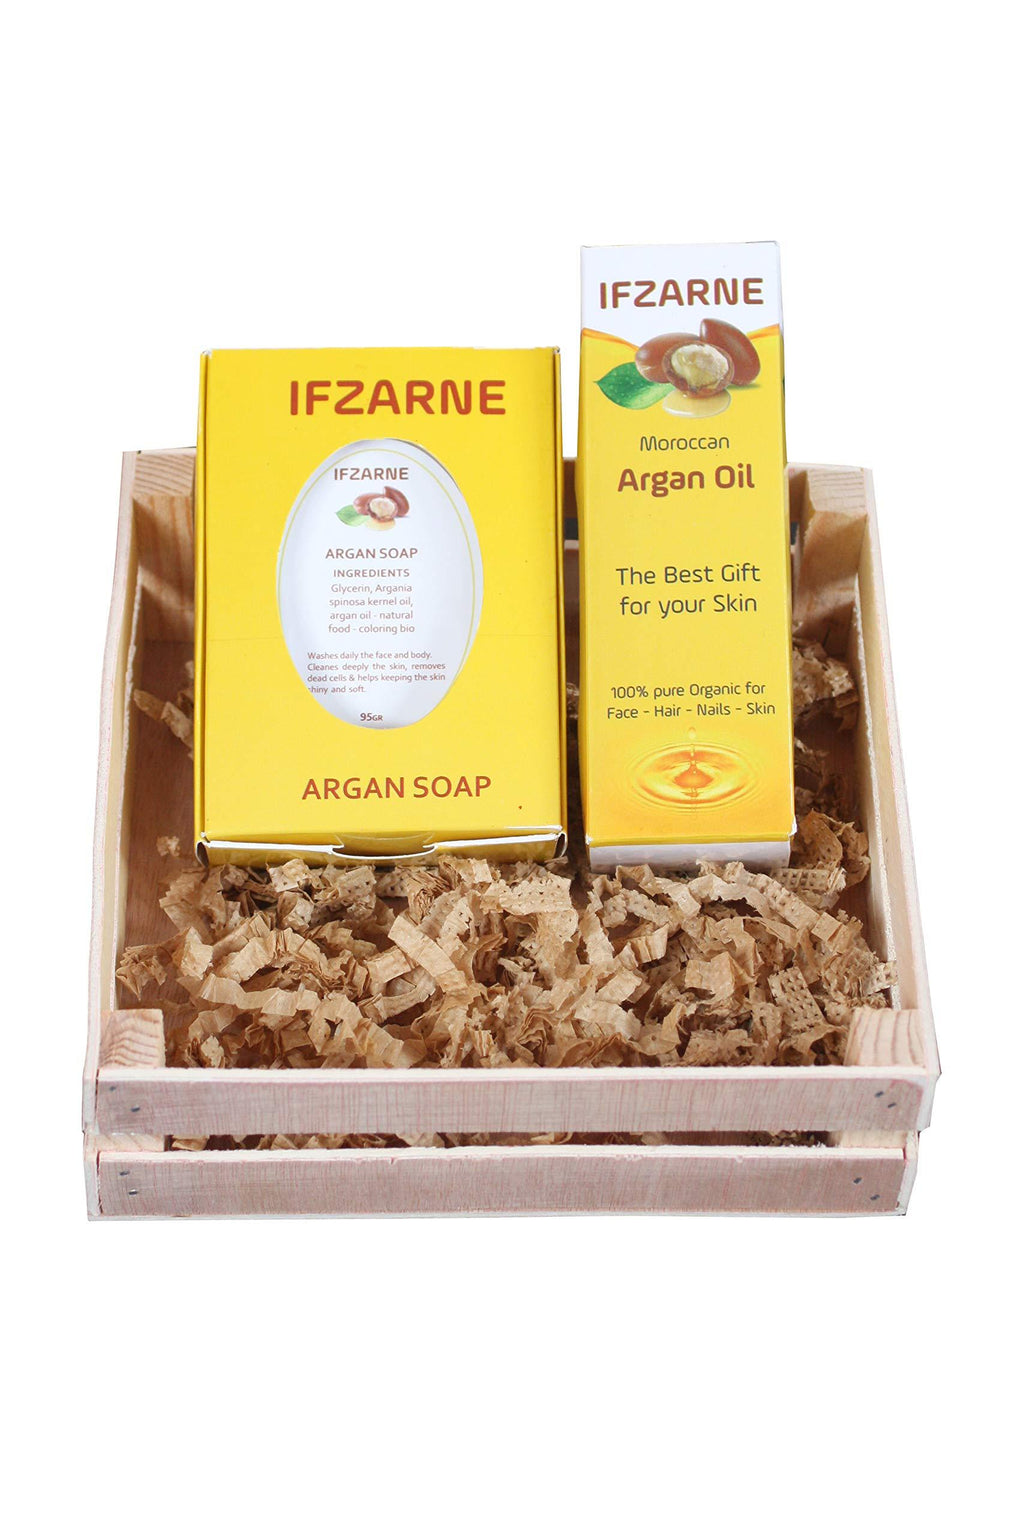 Ifzarne Moroccan Argan Oil - BeesActive Australia